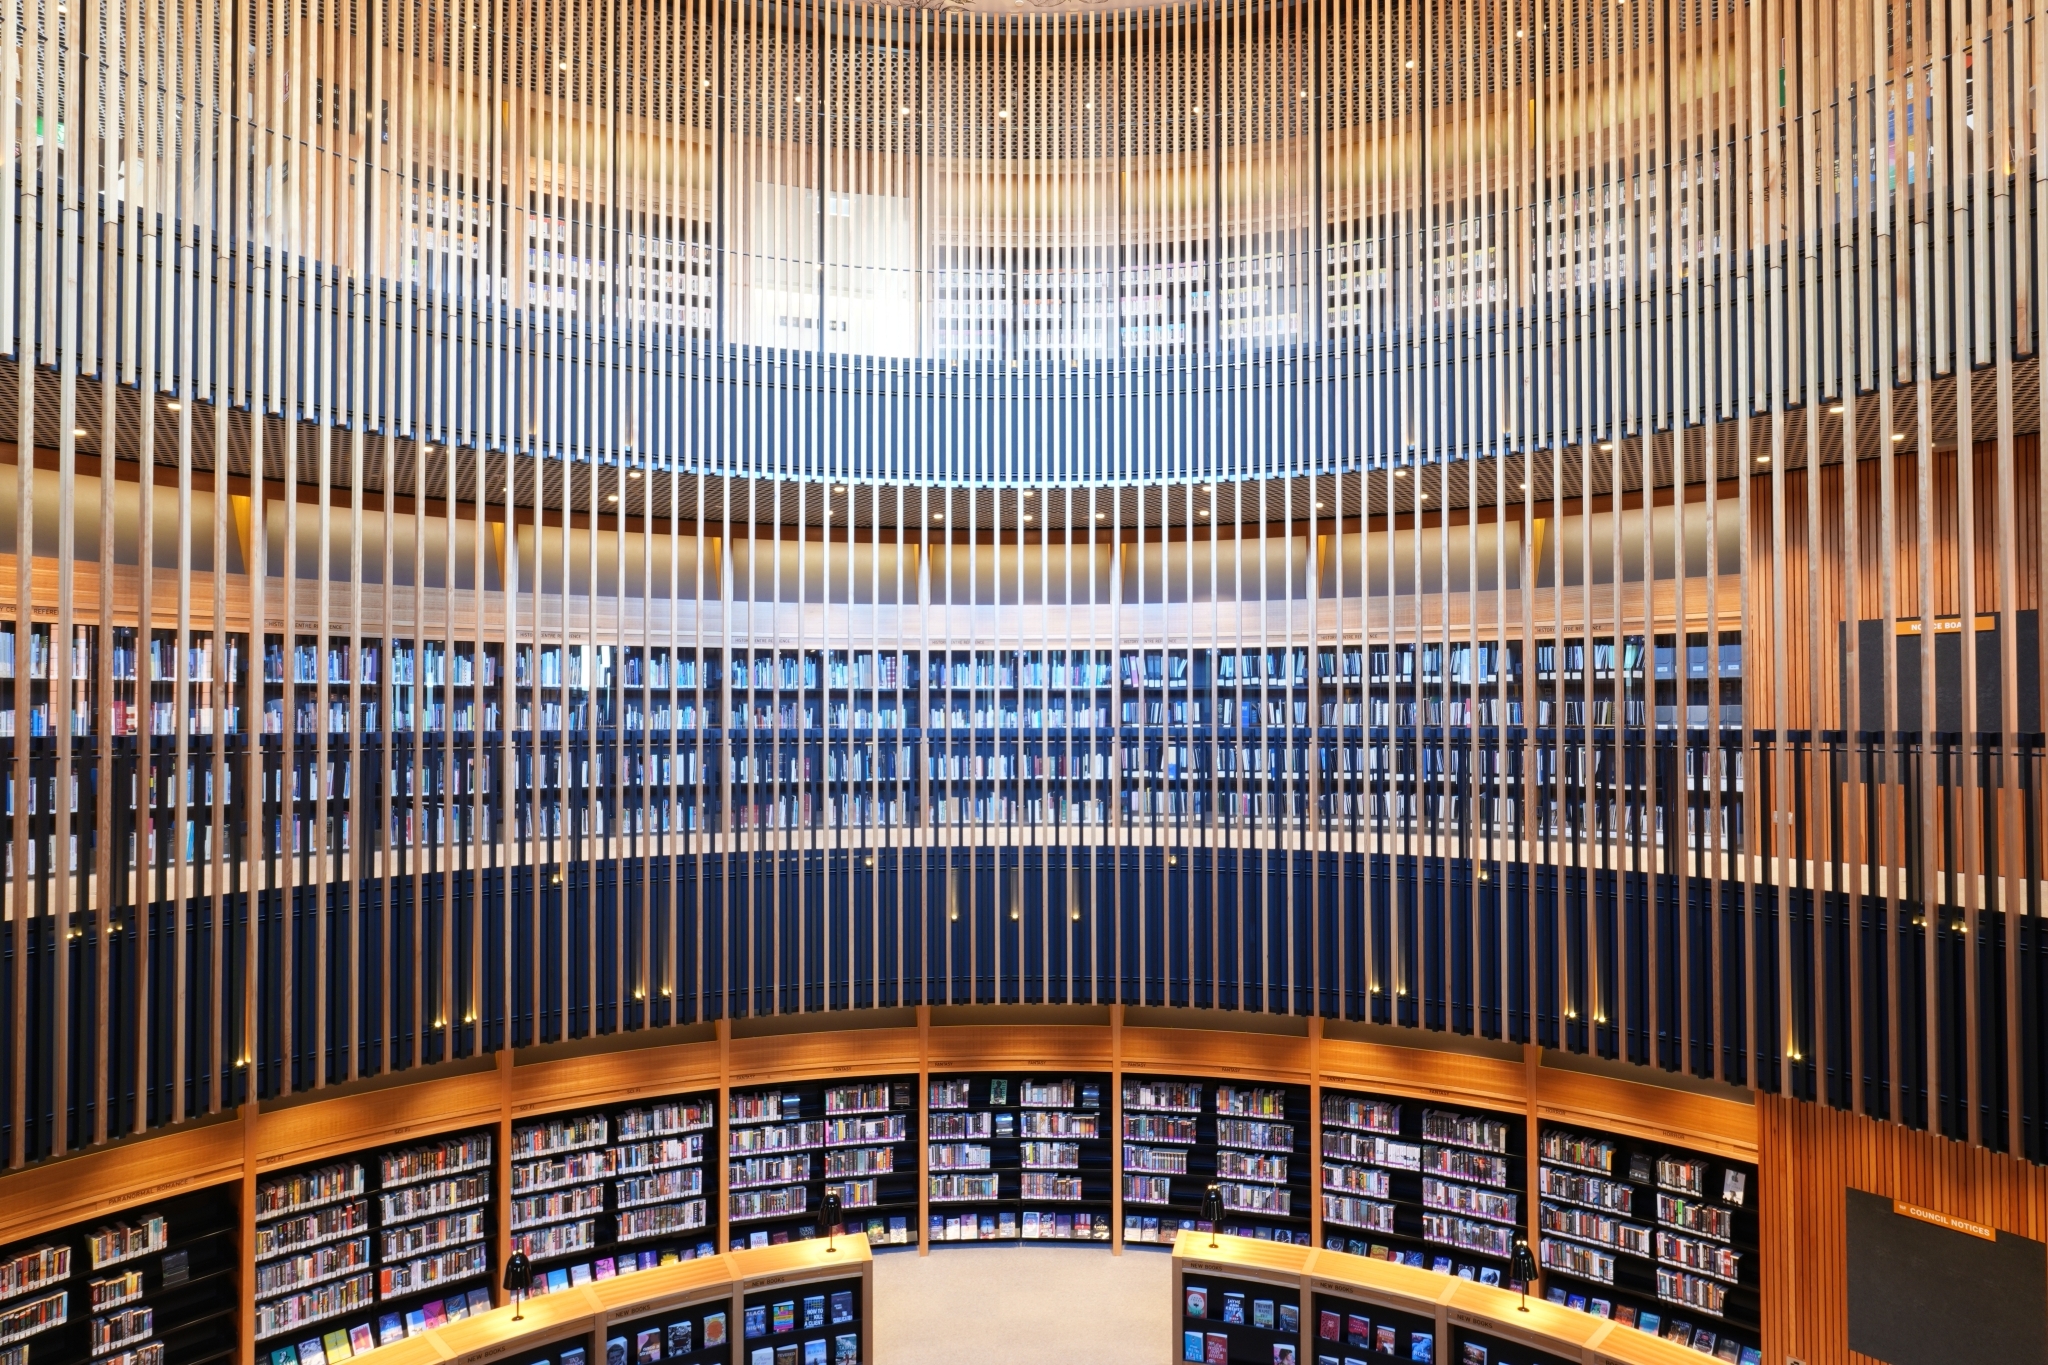 Circular central atrium of a library